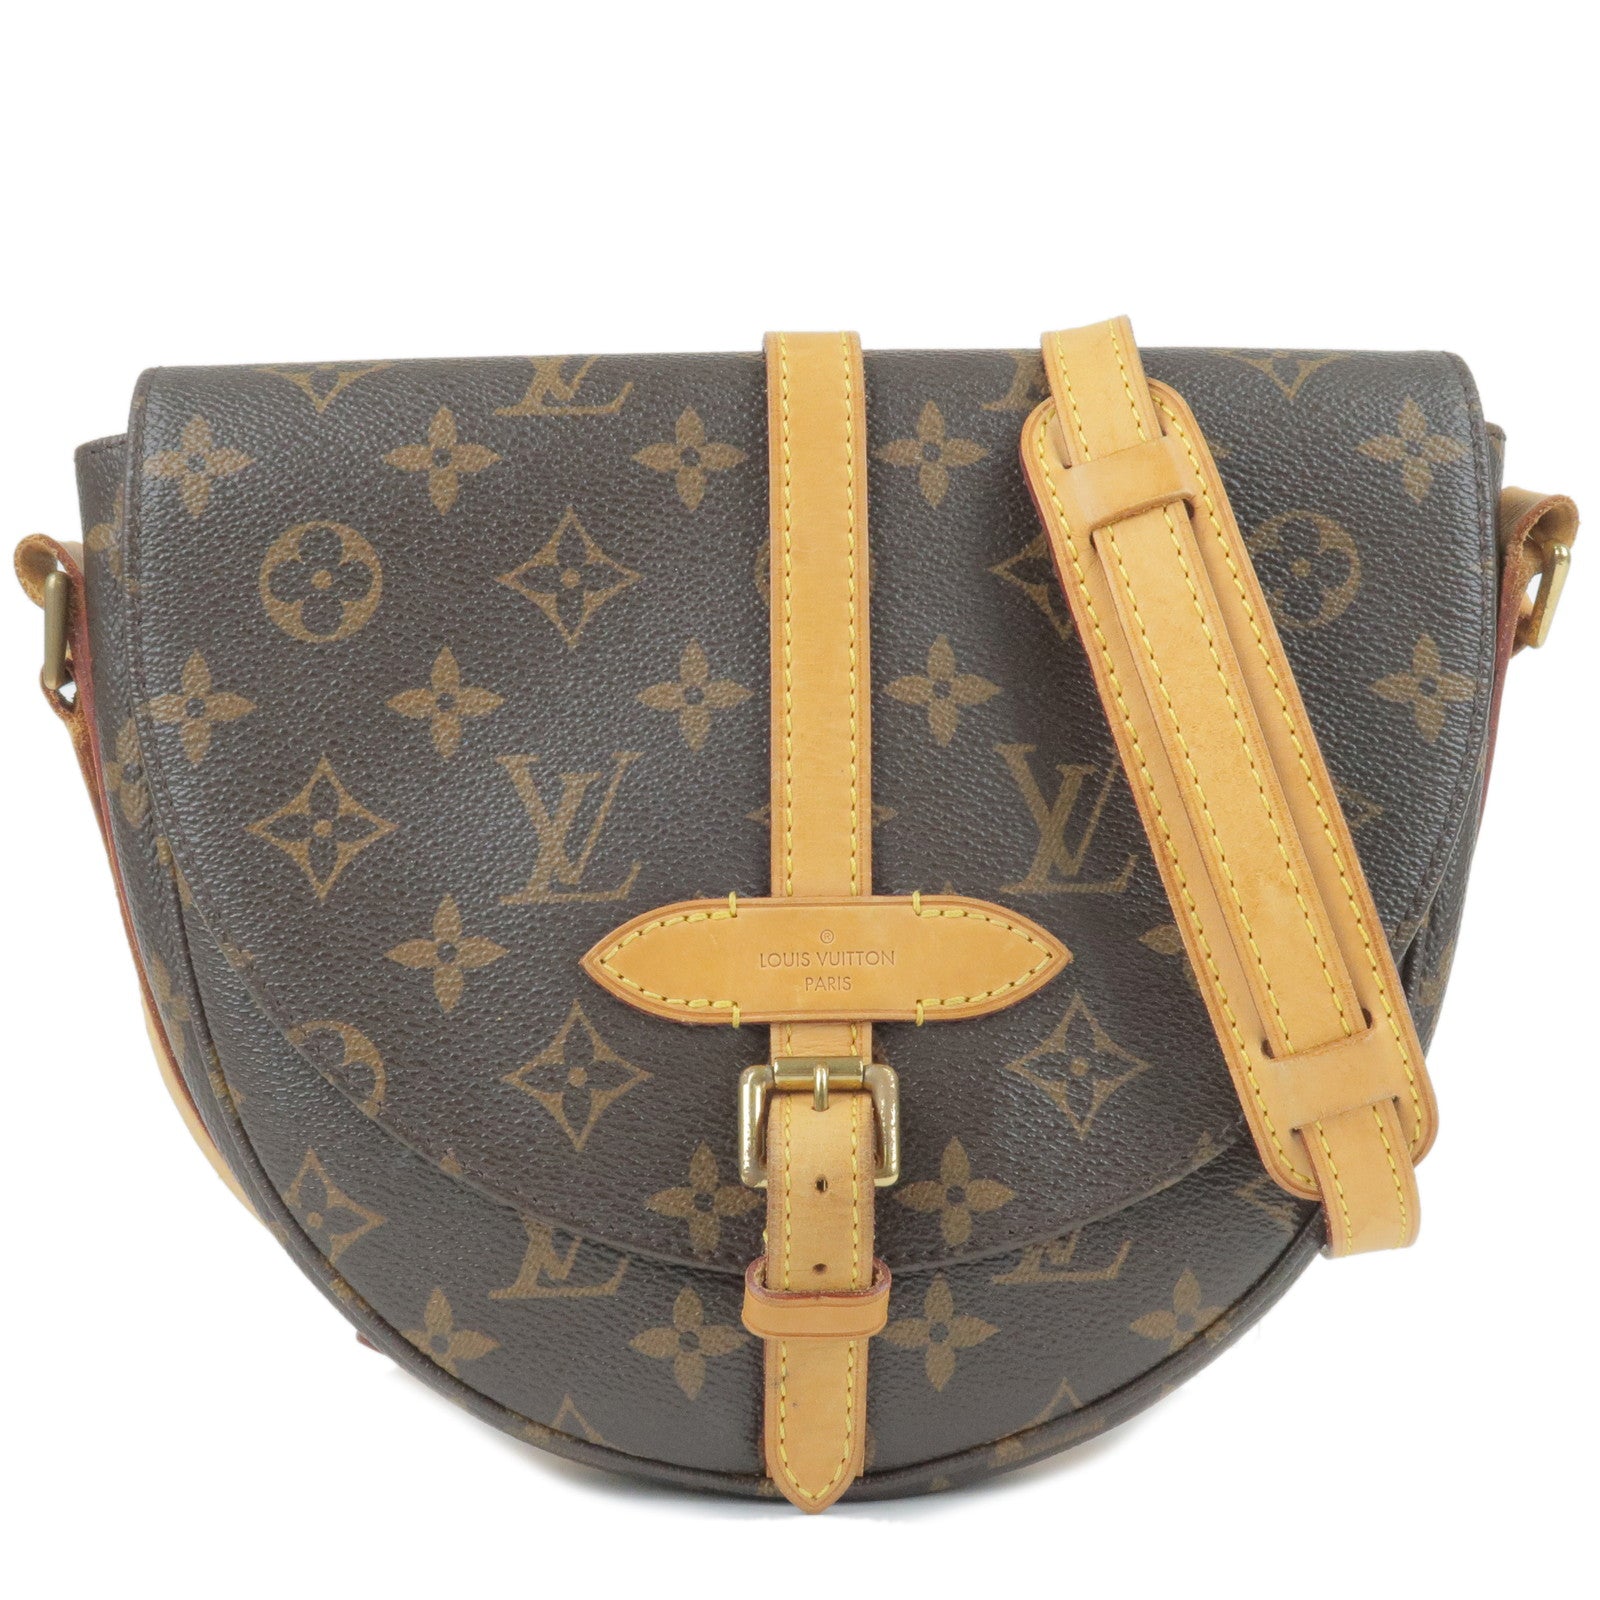 Authentic Louis Vuitton Shoulder Bag Chantilly GM M40647 Browns